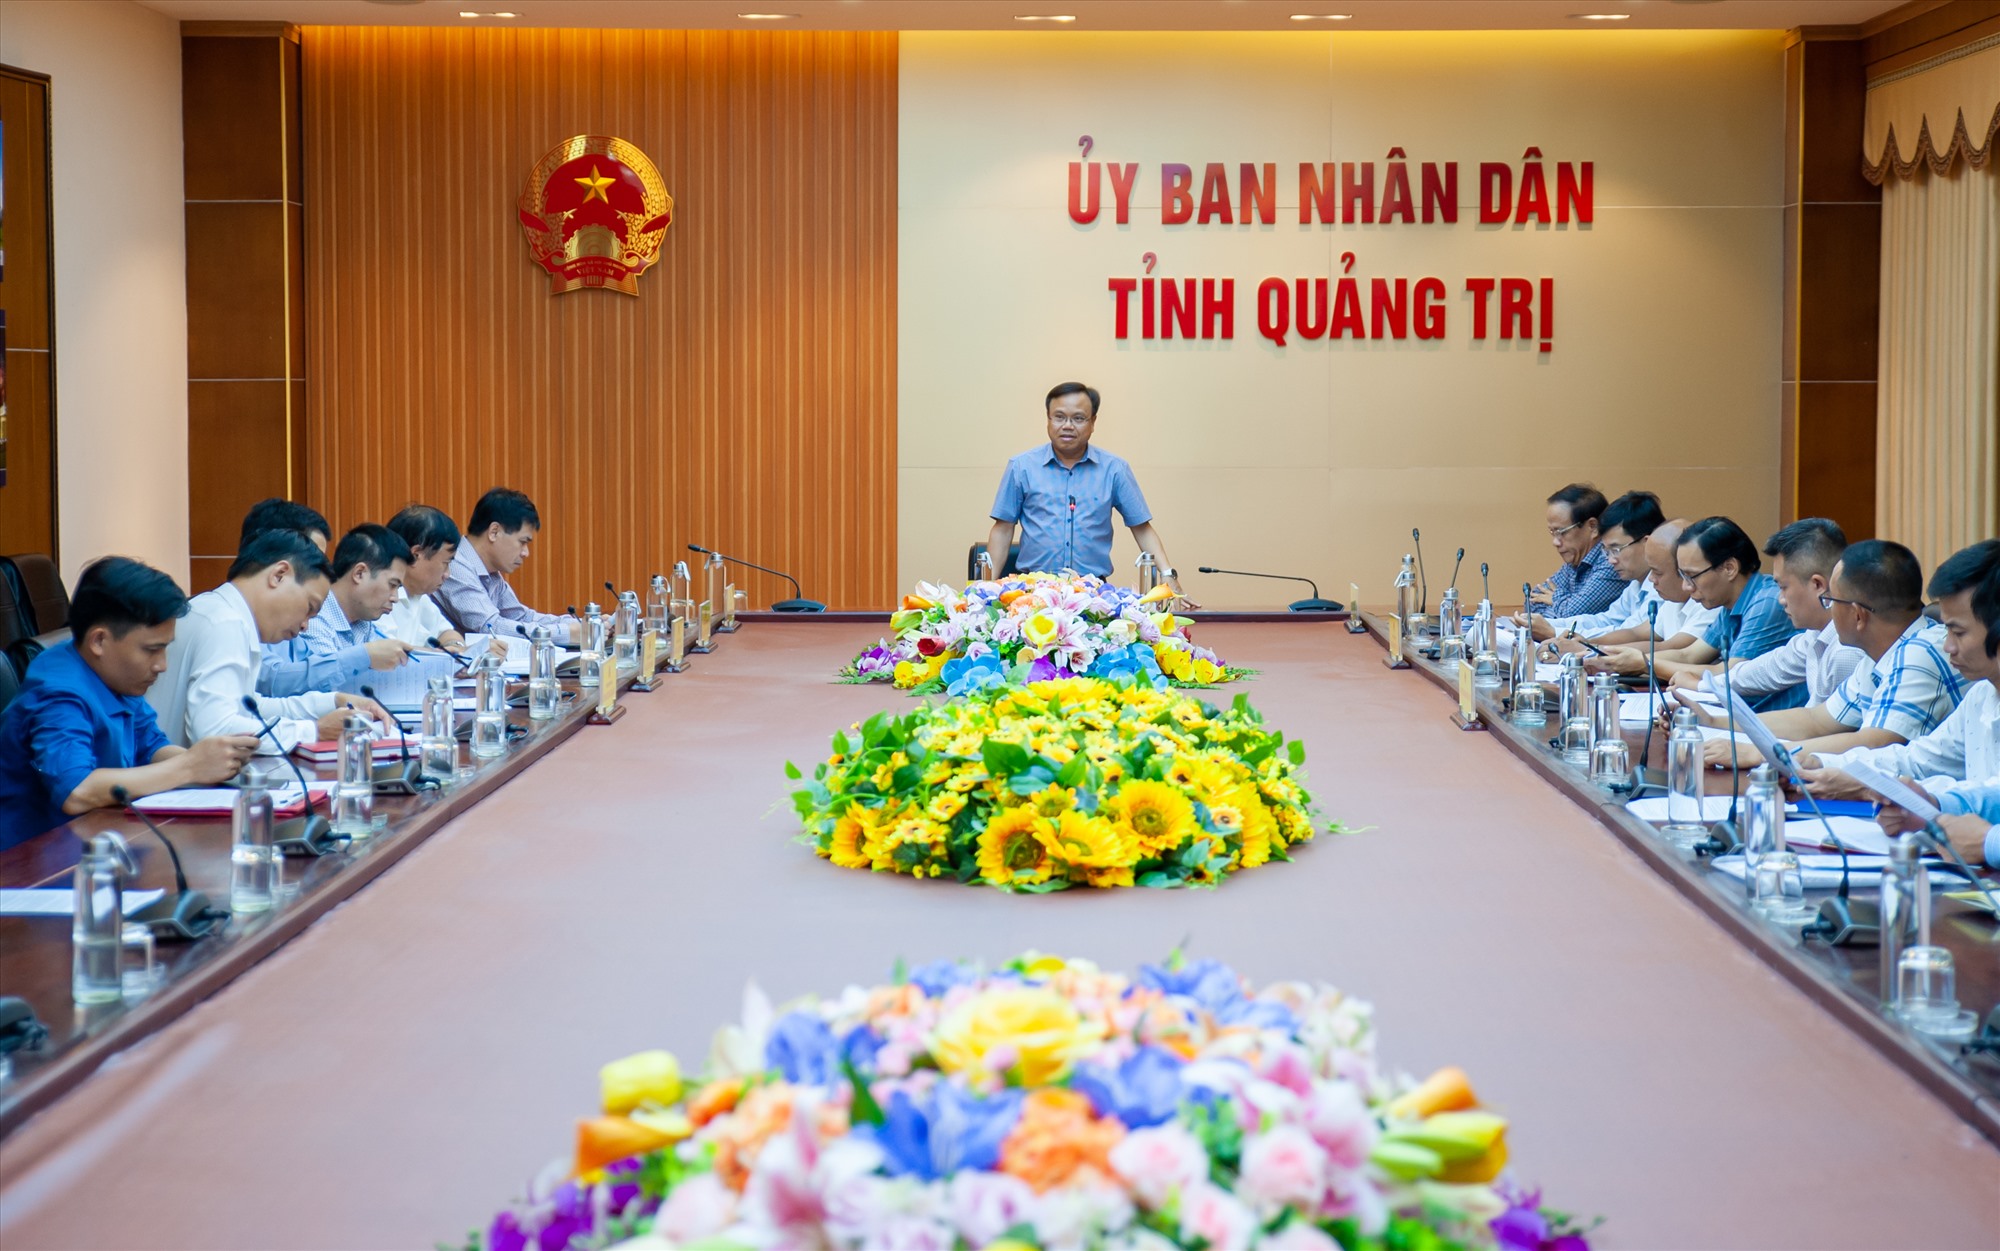 Phó Chủ tịch UBND tỉnh Lê Đức Tiến phát biểu kết luận buổi làm việc - Ảnh: Trần Tuyền